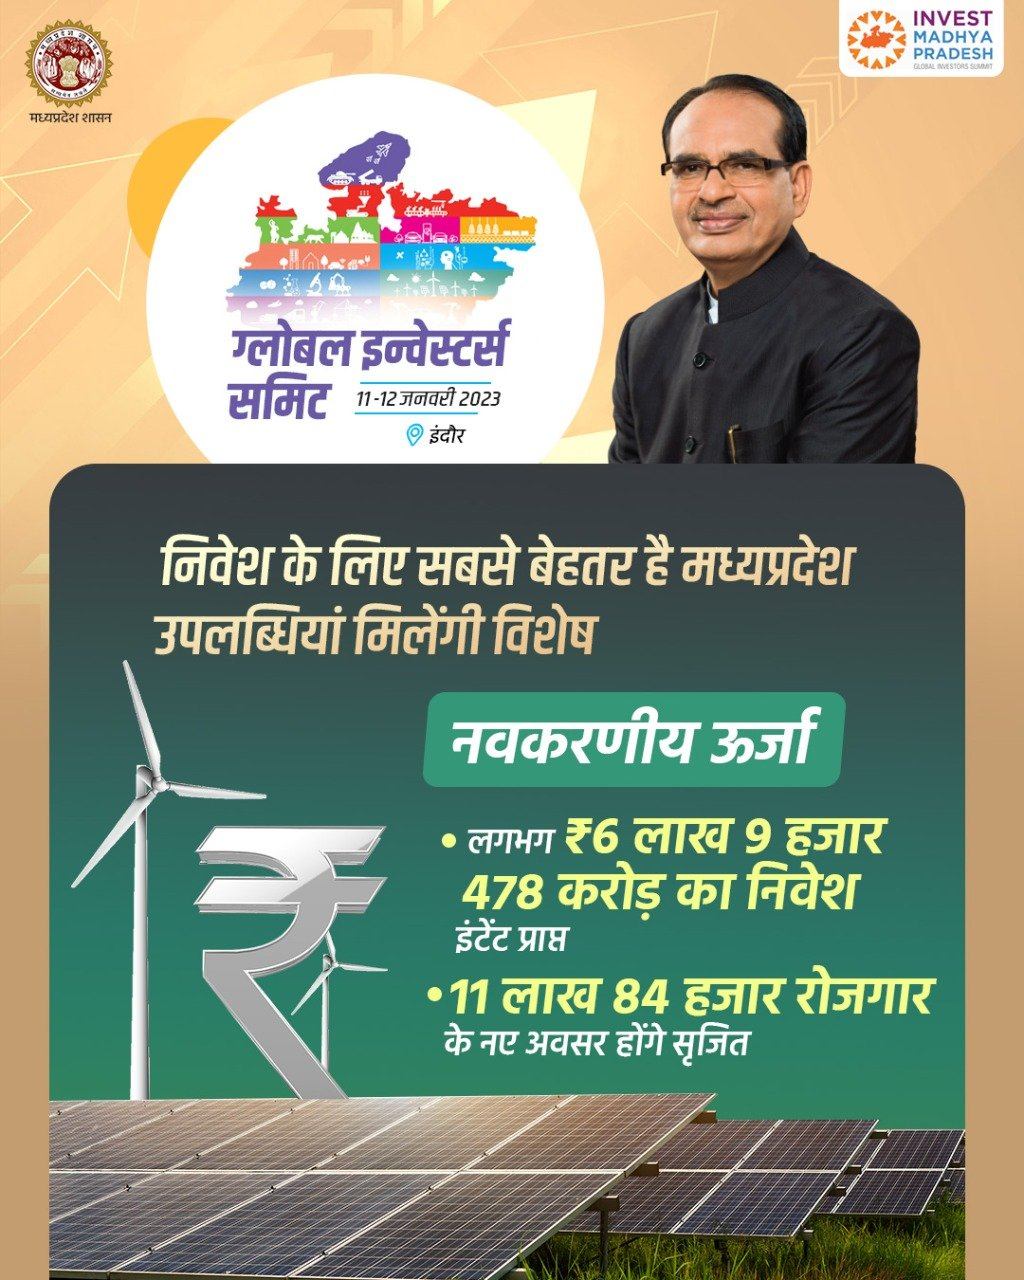 नवकरणीय ऊर्जा क्षेत्र में ₹6 लाख 9 हजार 478 करोड़ के निवेश 